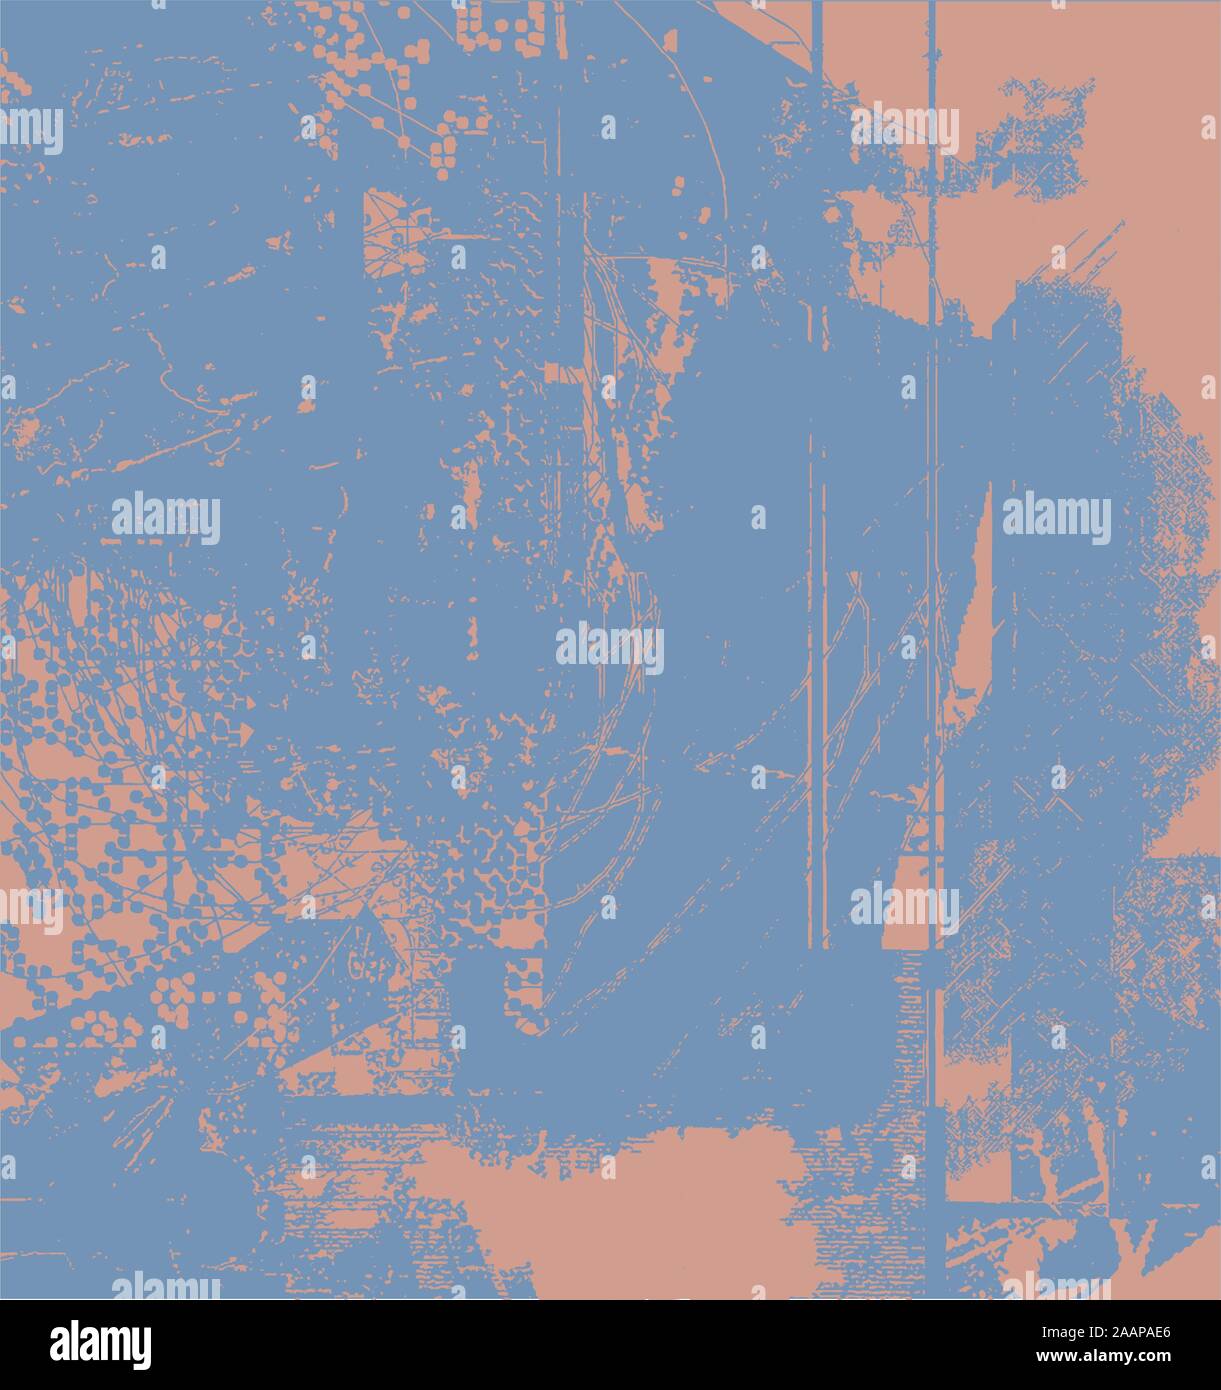 Abstract Background effetti Grunge Design della carta - blu e arancione - uno stile rétro Illustrazione Vettoriale